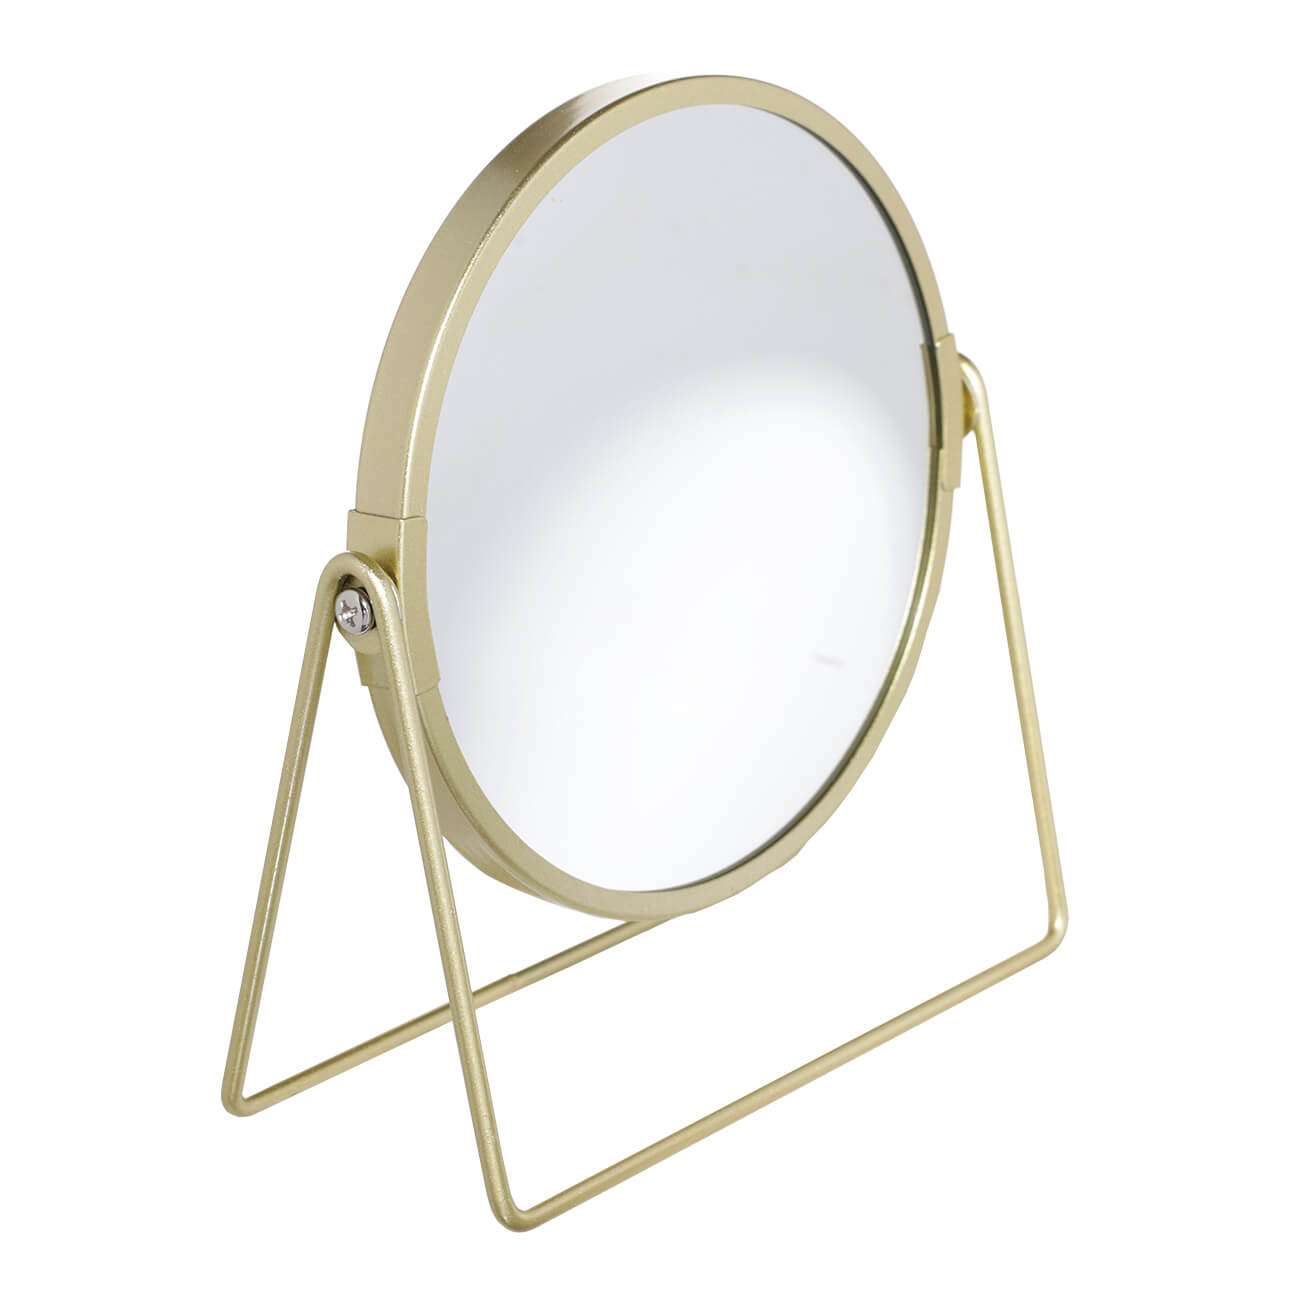 Зеркало настольное, 18 см, двустороннее, металл, круглое, золотистое, Freya зеркало карманное 7 см двустороннее металл золотистое черные стразы art deco